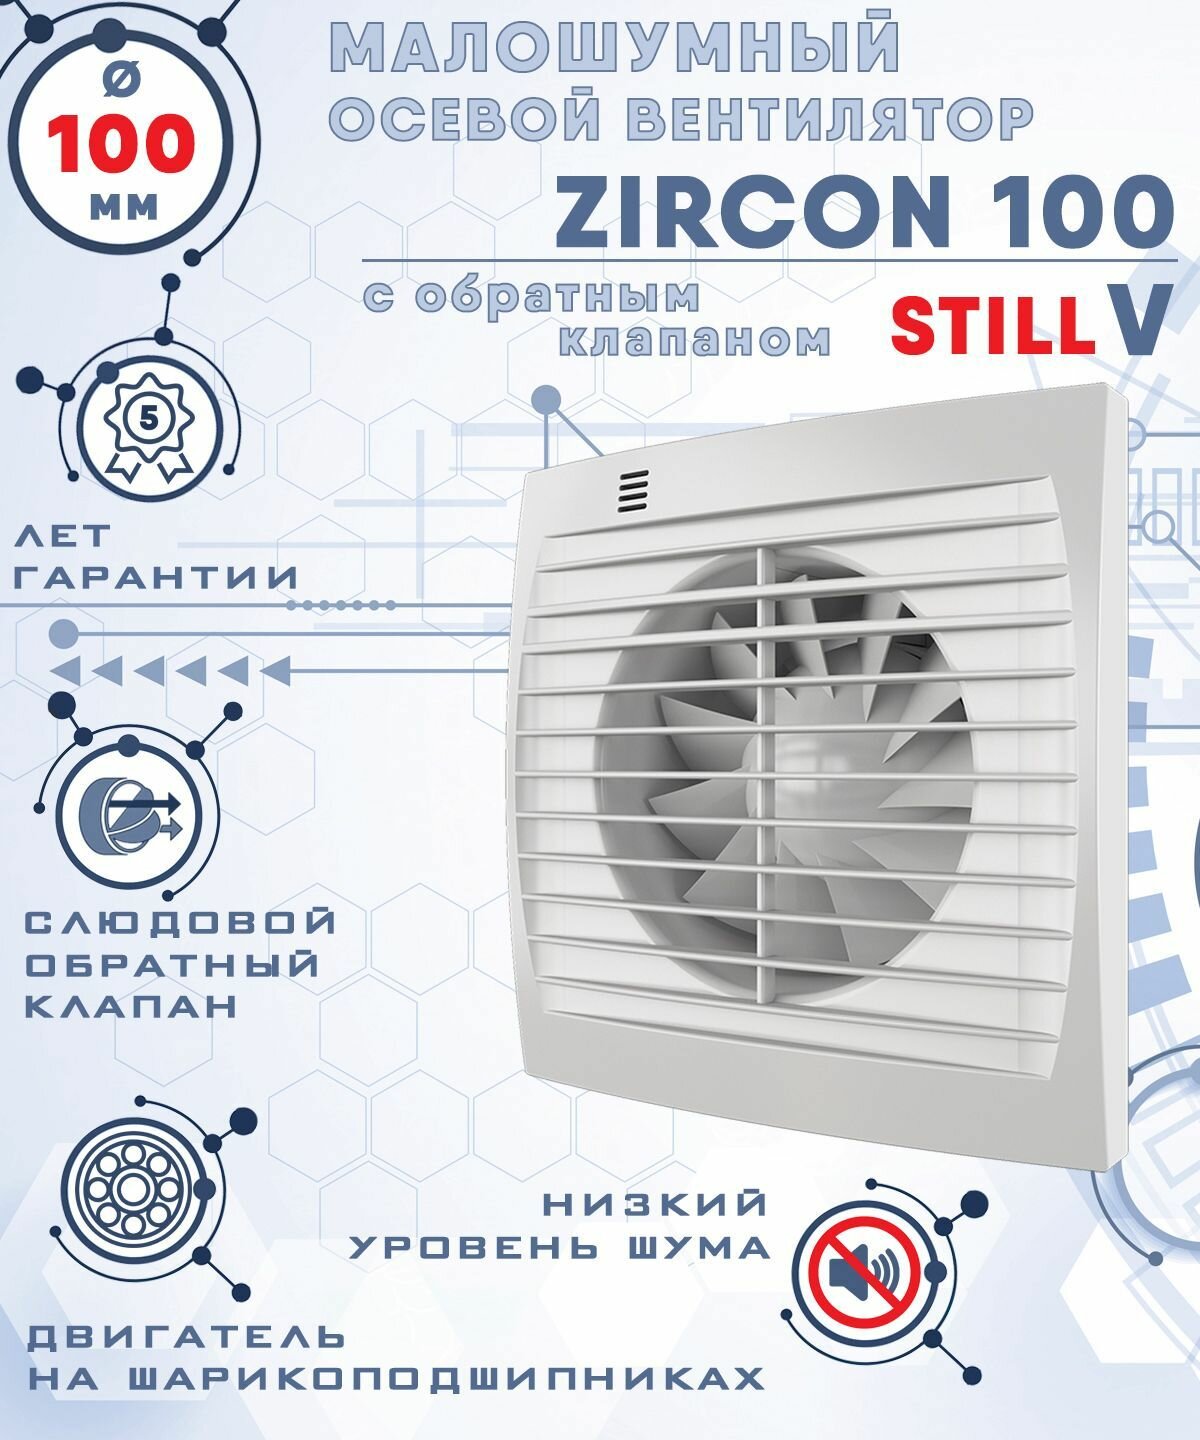 ZIRCON 100 STILL V вентилятор вытяжной малошумный 25 Дб энергоэффективный 8 Вт на шарикоподшипниках с обратным клапаном диаметр 100 мм ZERNBERG